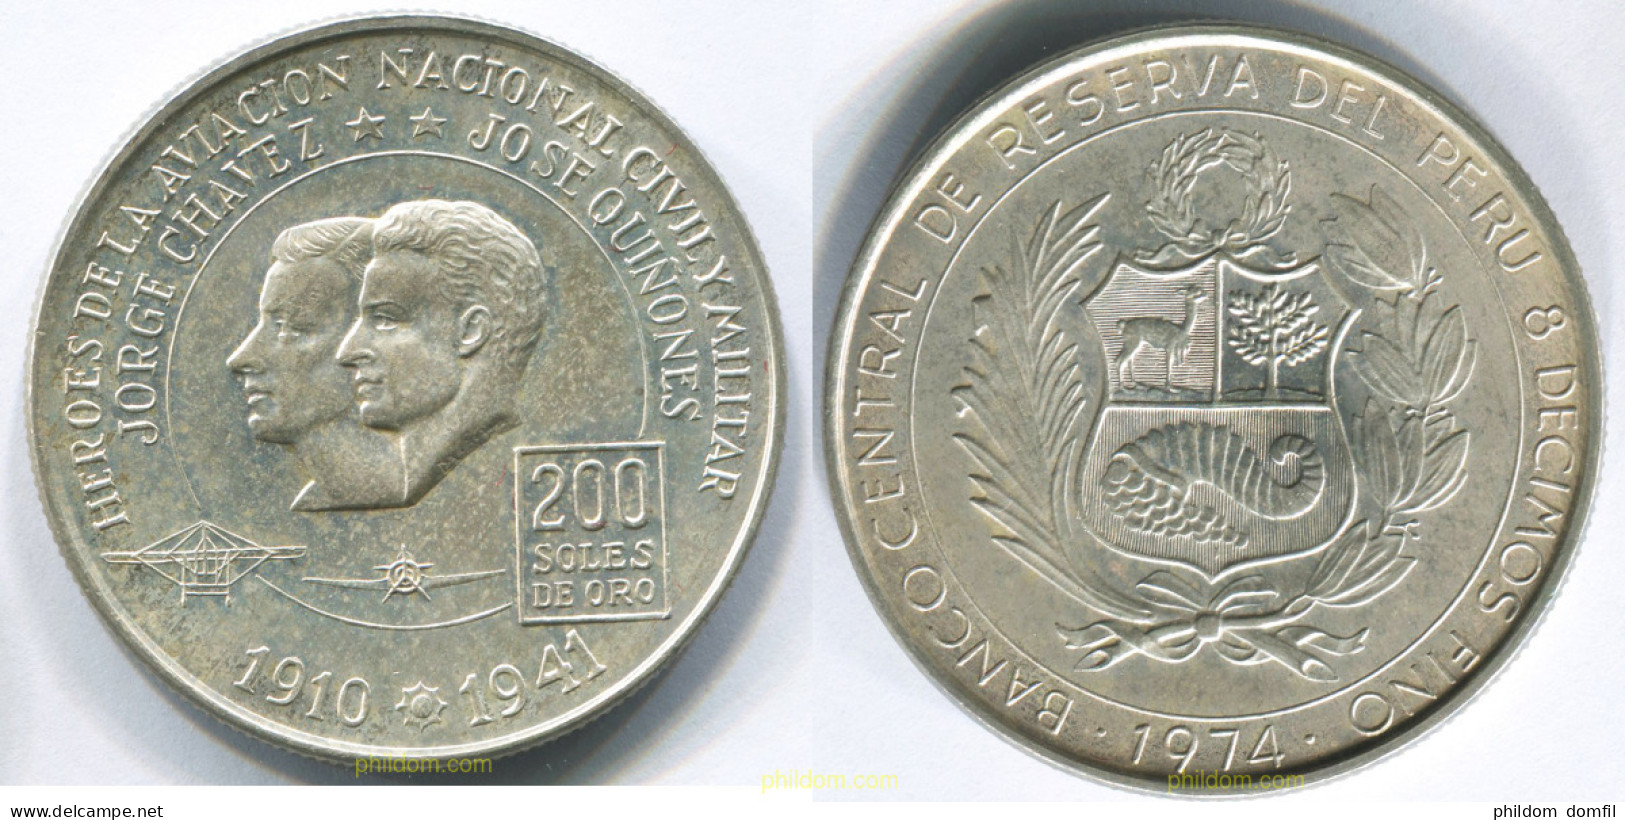 3034 PERU 1974 PERU 200 SOLES 1974 - Pérou